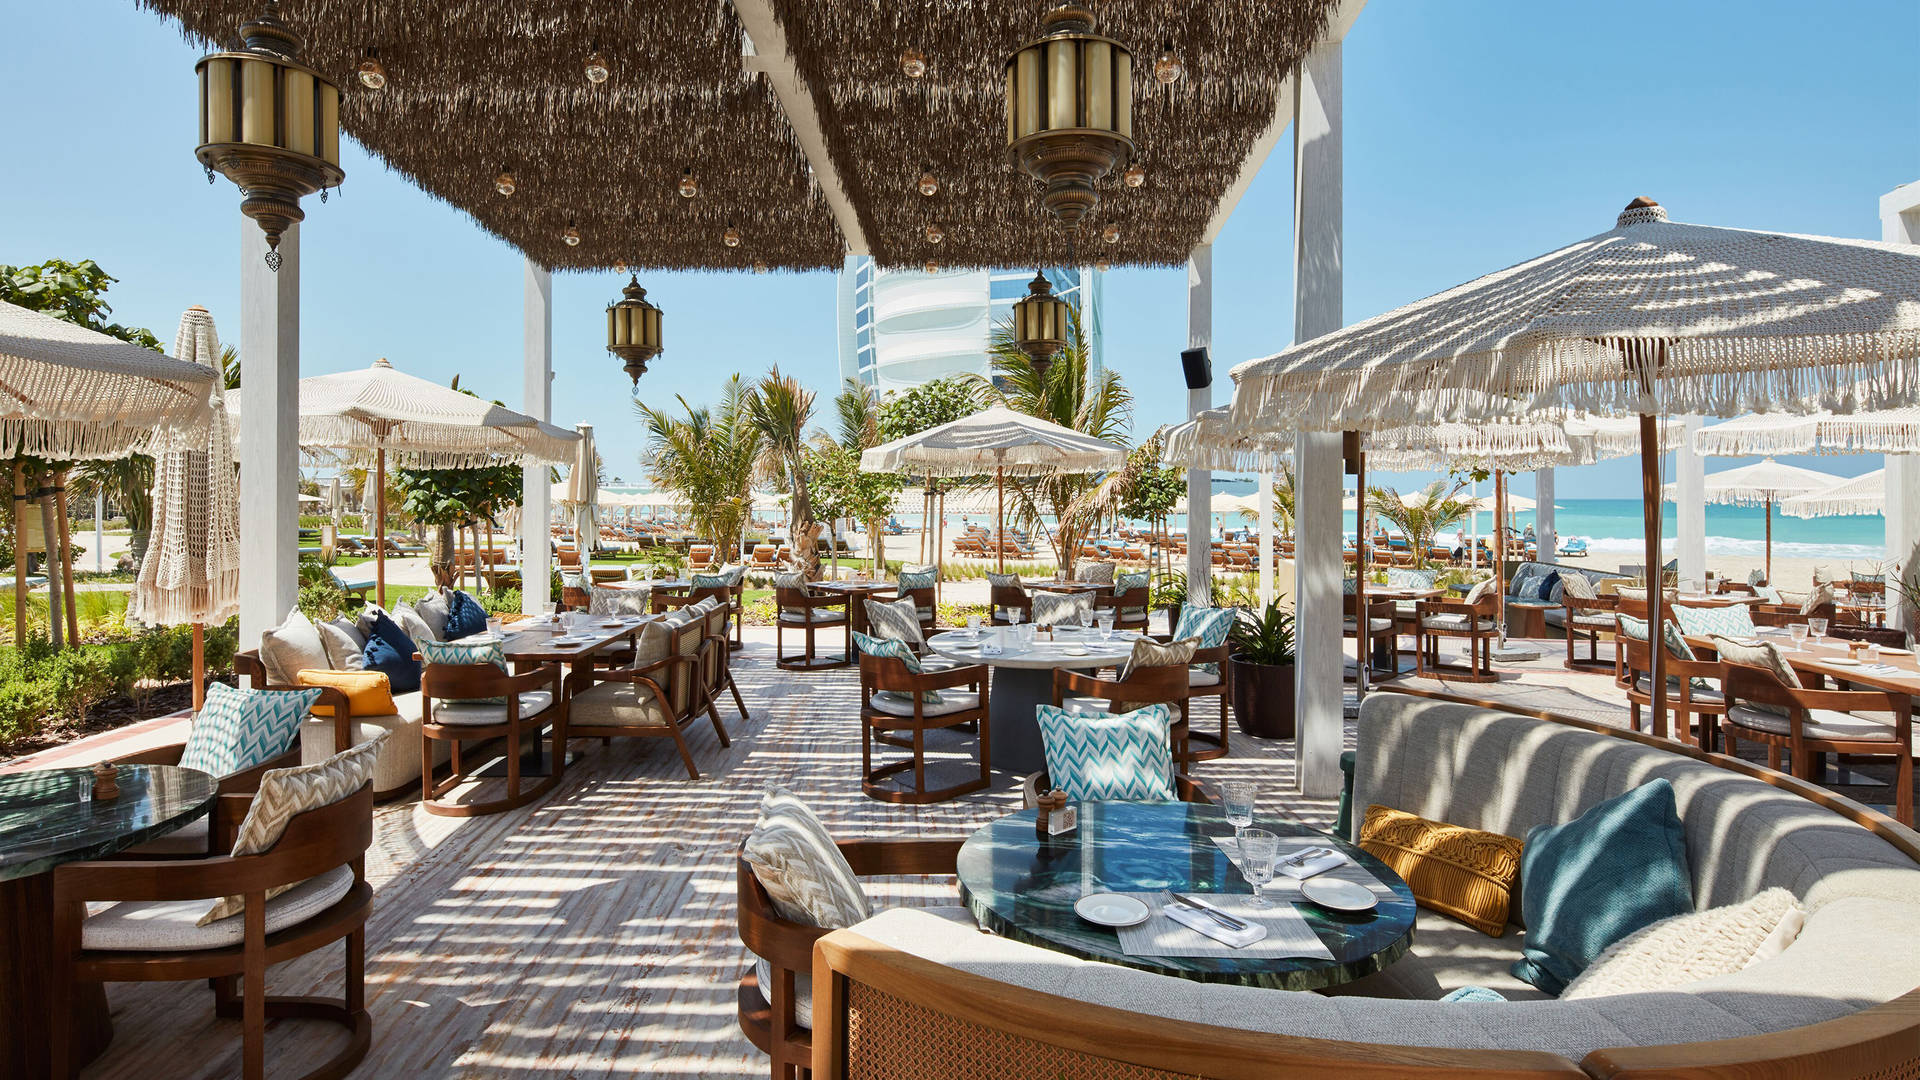 Nuska Beach restaurant at Jumeirah Beach Hotel perfect for families in Dubai